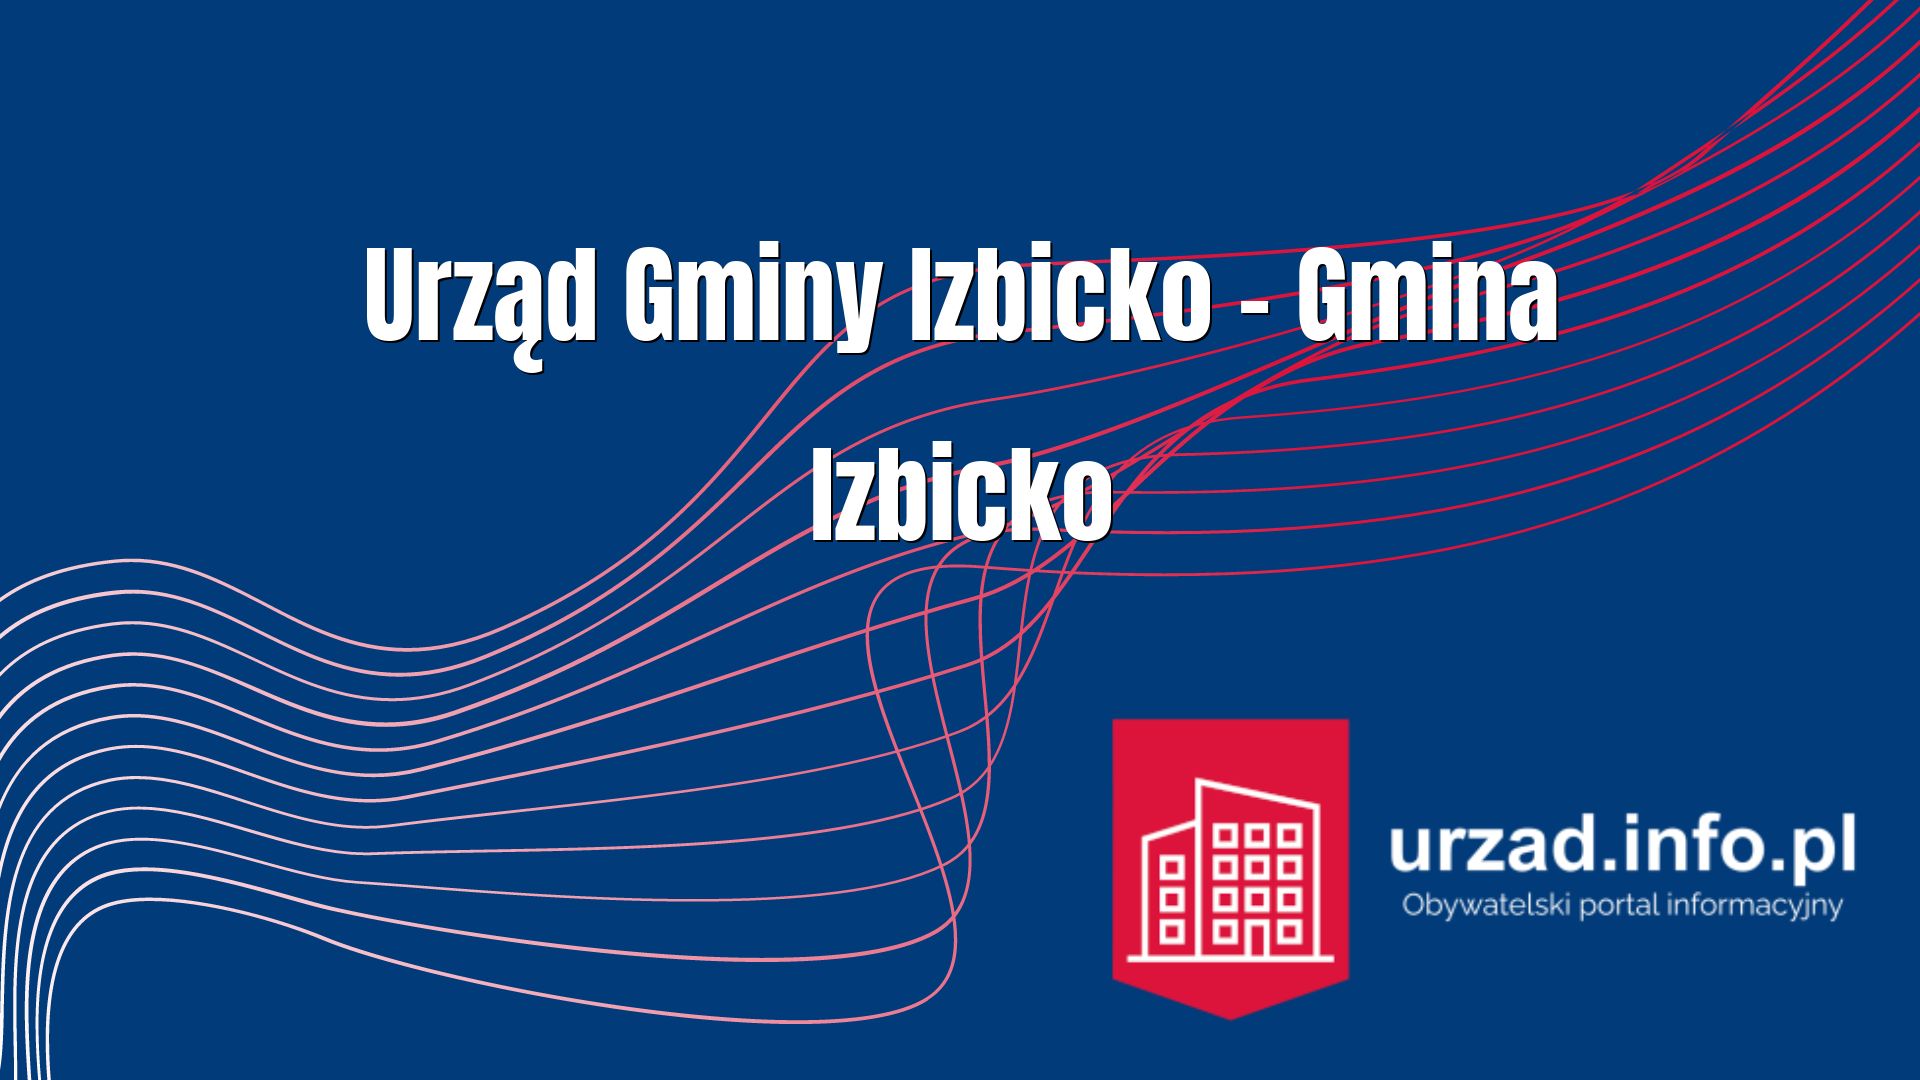 Urząd Gminy Izbicko – Gmina Izbicko